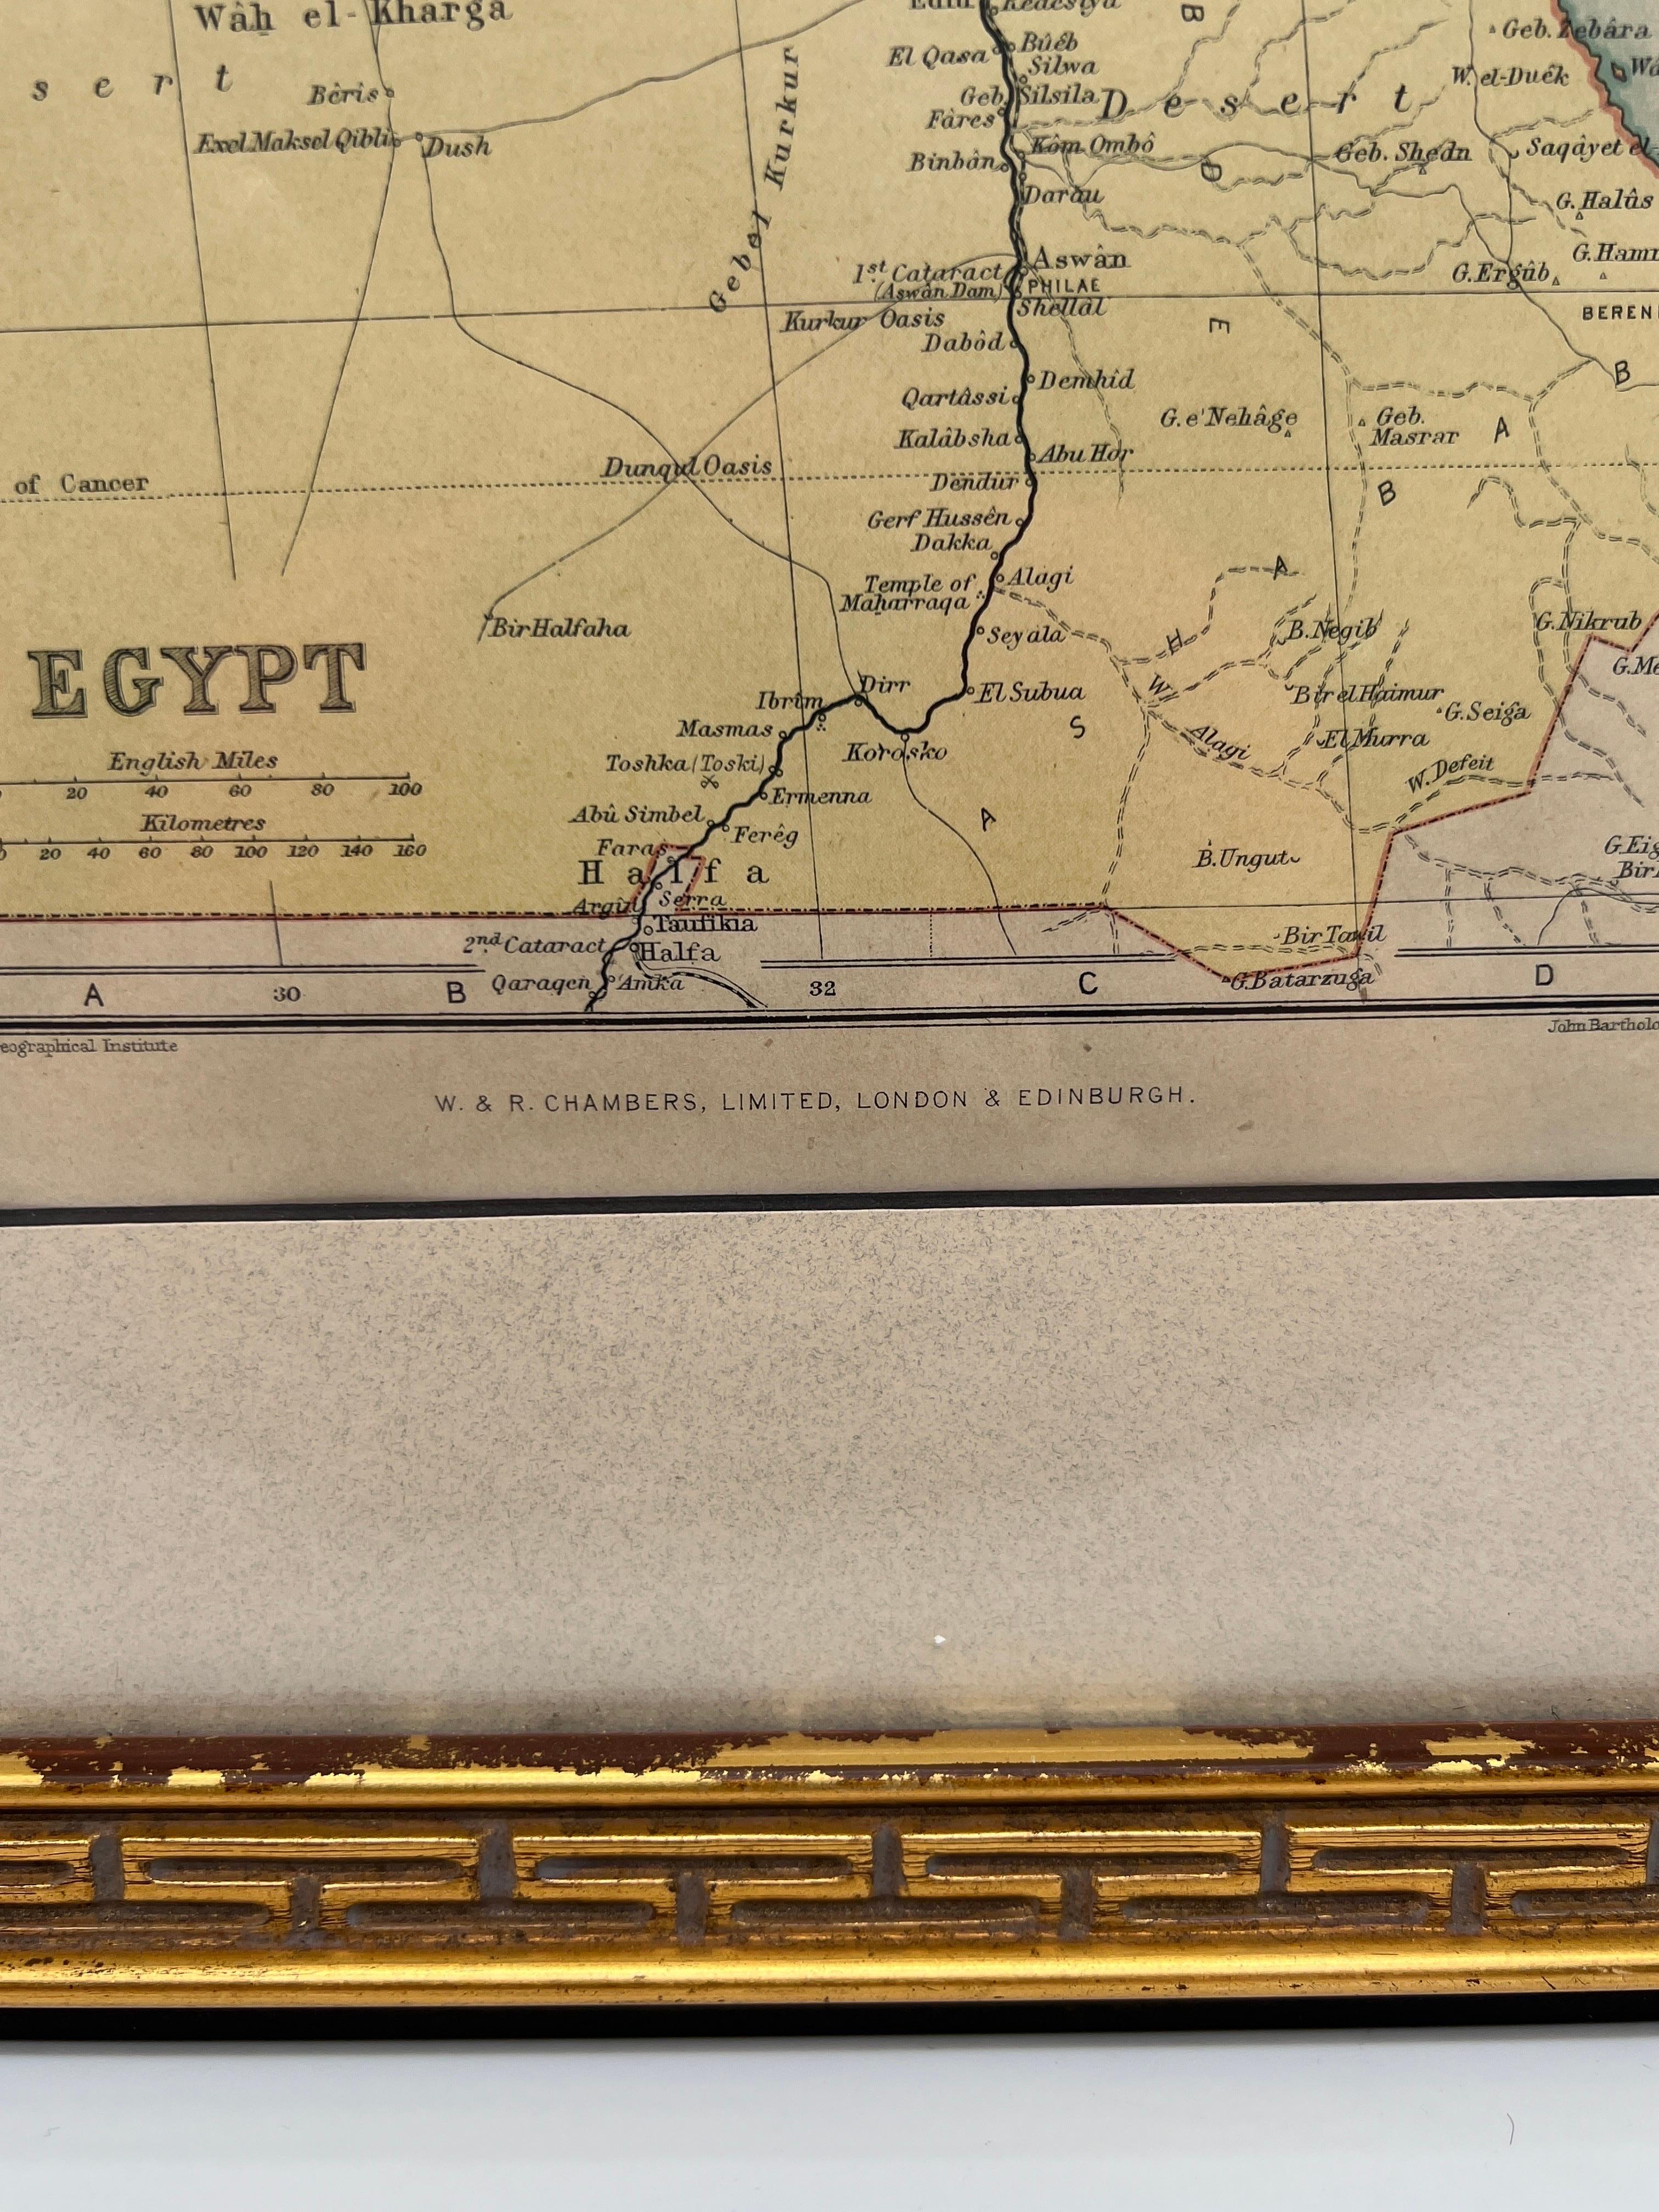 Ägypten Karte -  Das Edinburgh and Geographical Institute, John Bartholomew & Son LTD, W & R Chambers, um 1880. Untergebracht in einem vergoldeten Holzrahmen mit griechischem Schlüssel. 

Datum: 1880

Geograph und Kartograph: John George Bartholomew